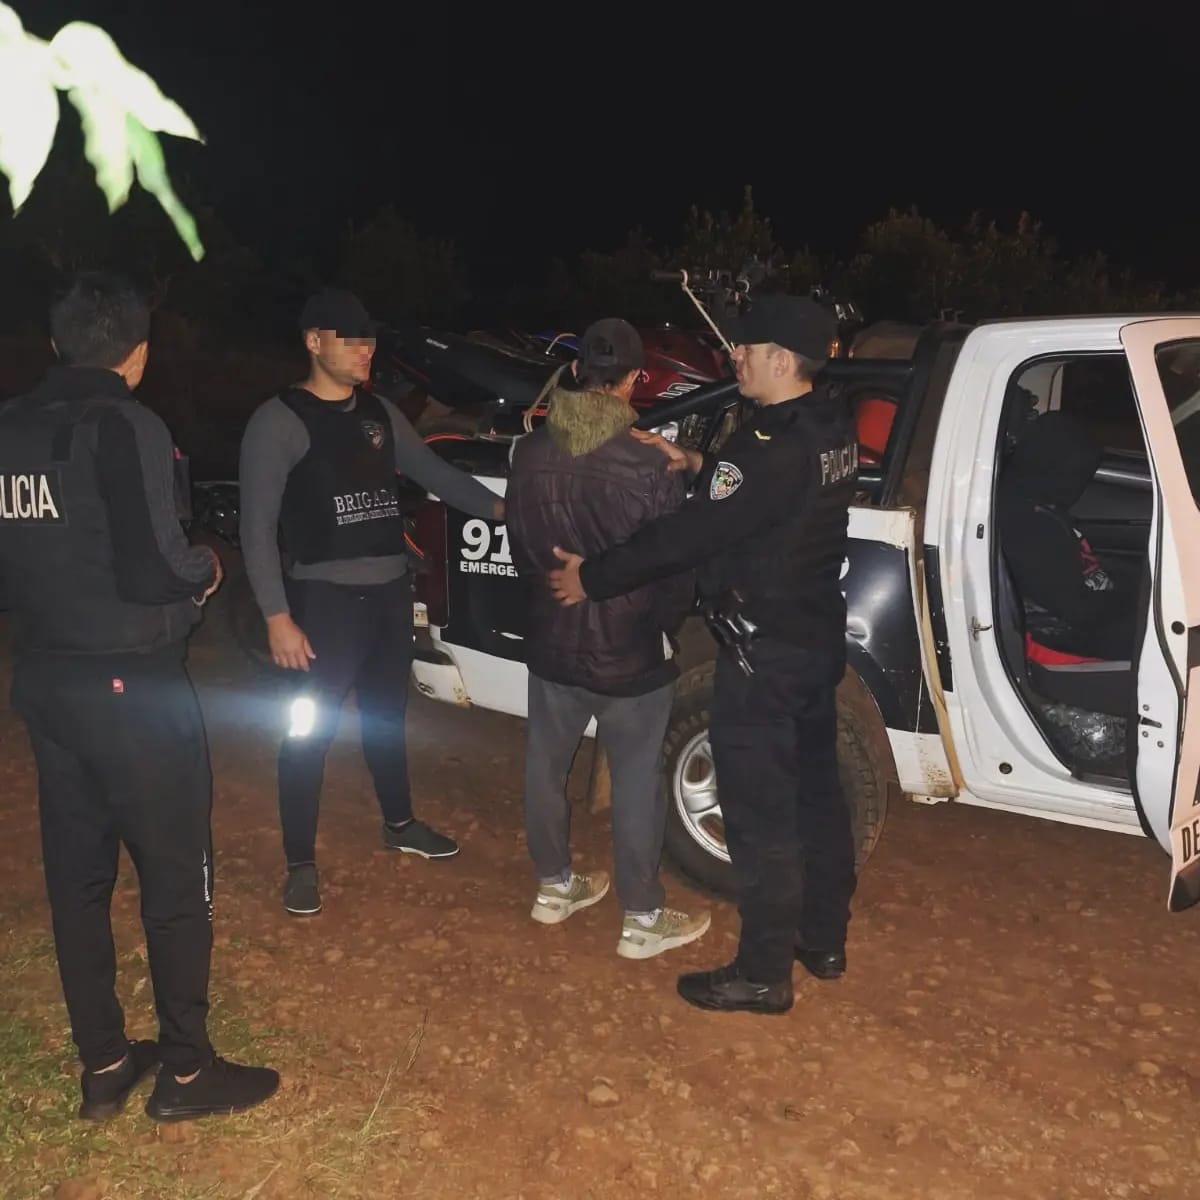 60 personas arrestadas, 66 vehículos incautados y 18 alcoholemias positivas tras megaoperativo en Misiones